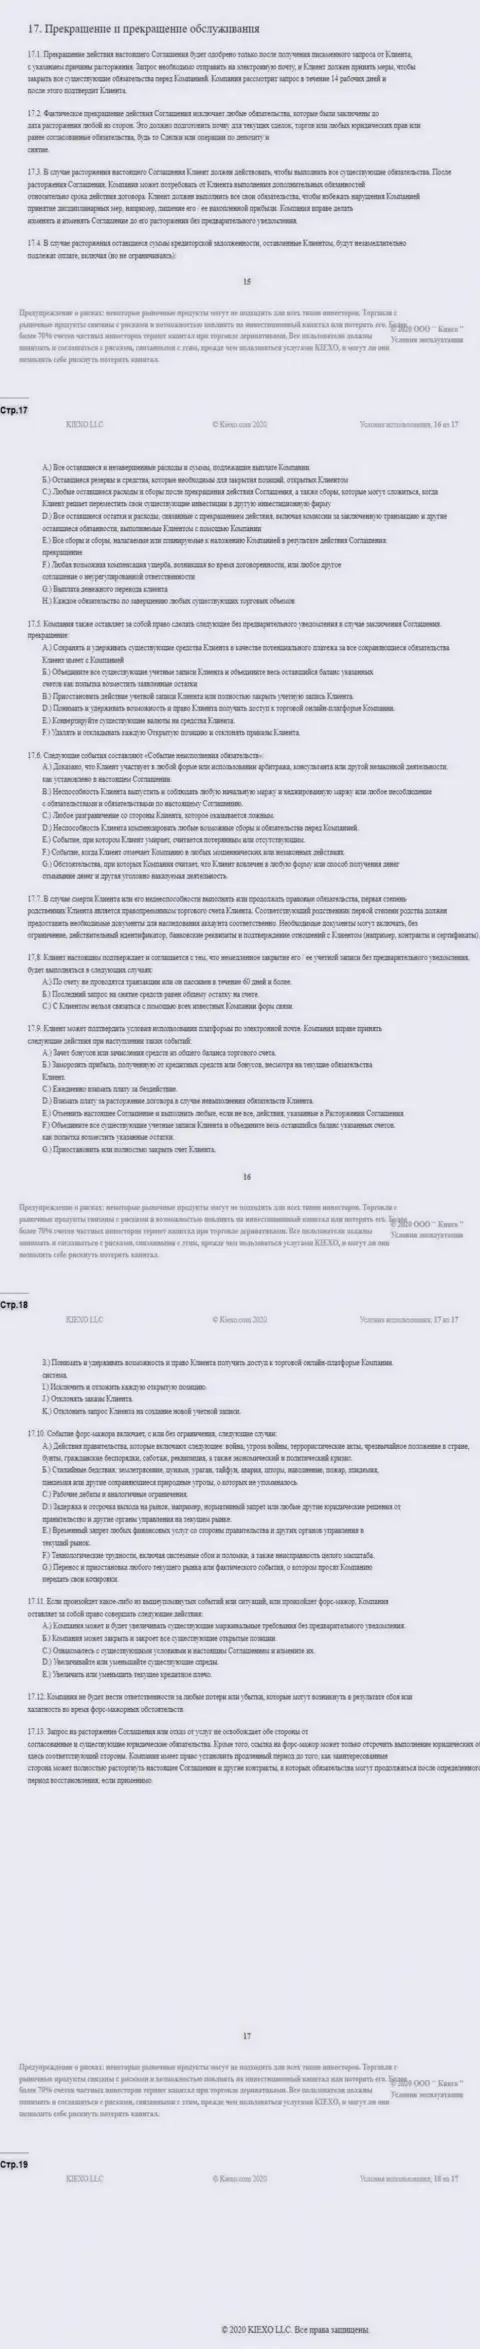 Клиентское соглашение ФОРЕКС организации Киехо (часть четвертая)